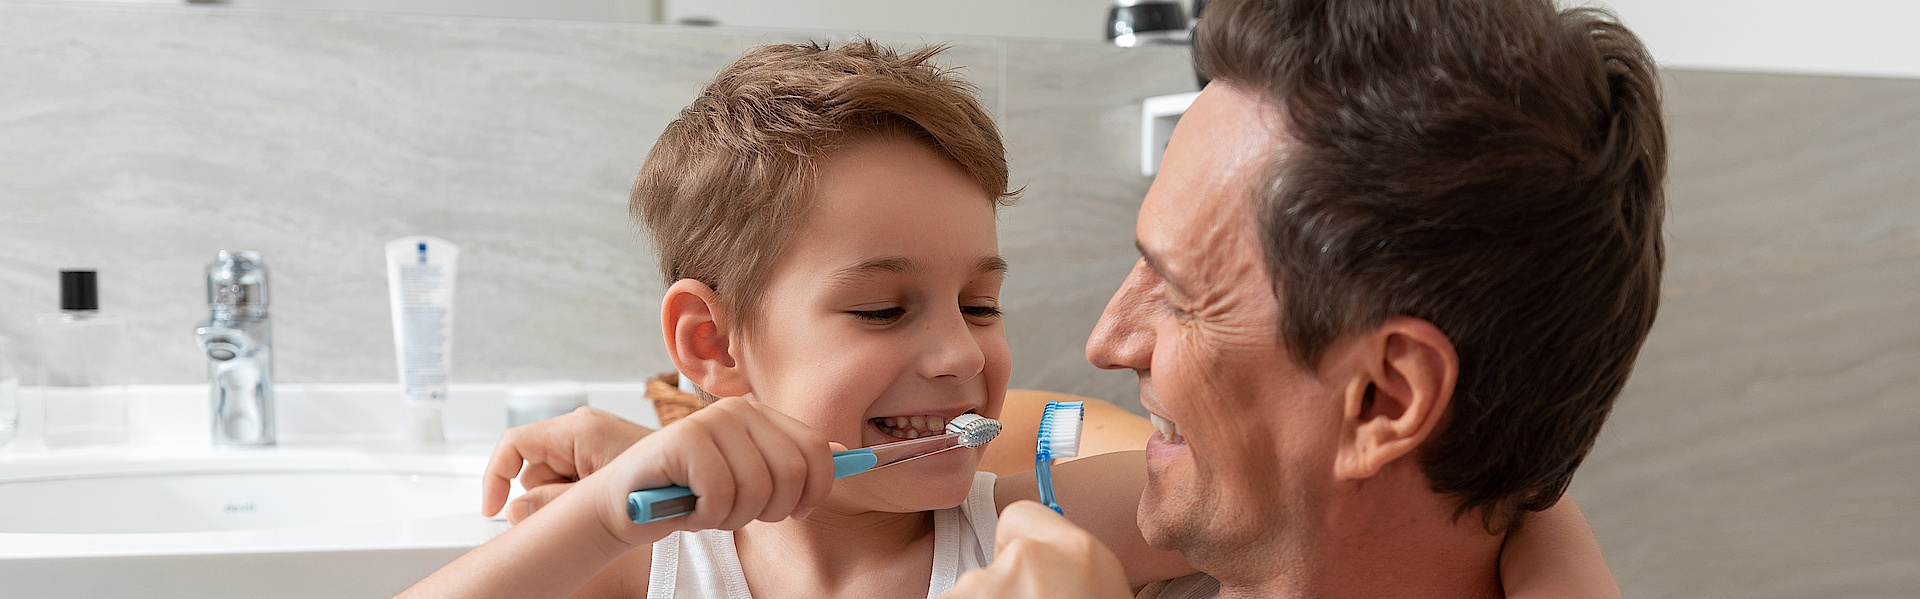 Ein Mann und ein Kind beim Putzen gemeinsam die Zähne . Die Beiden sind im Badezimmer.